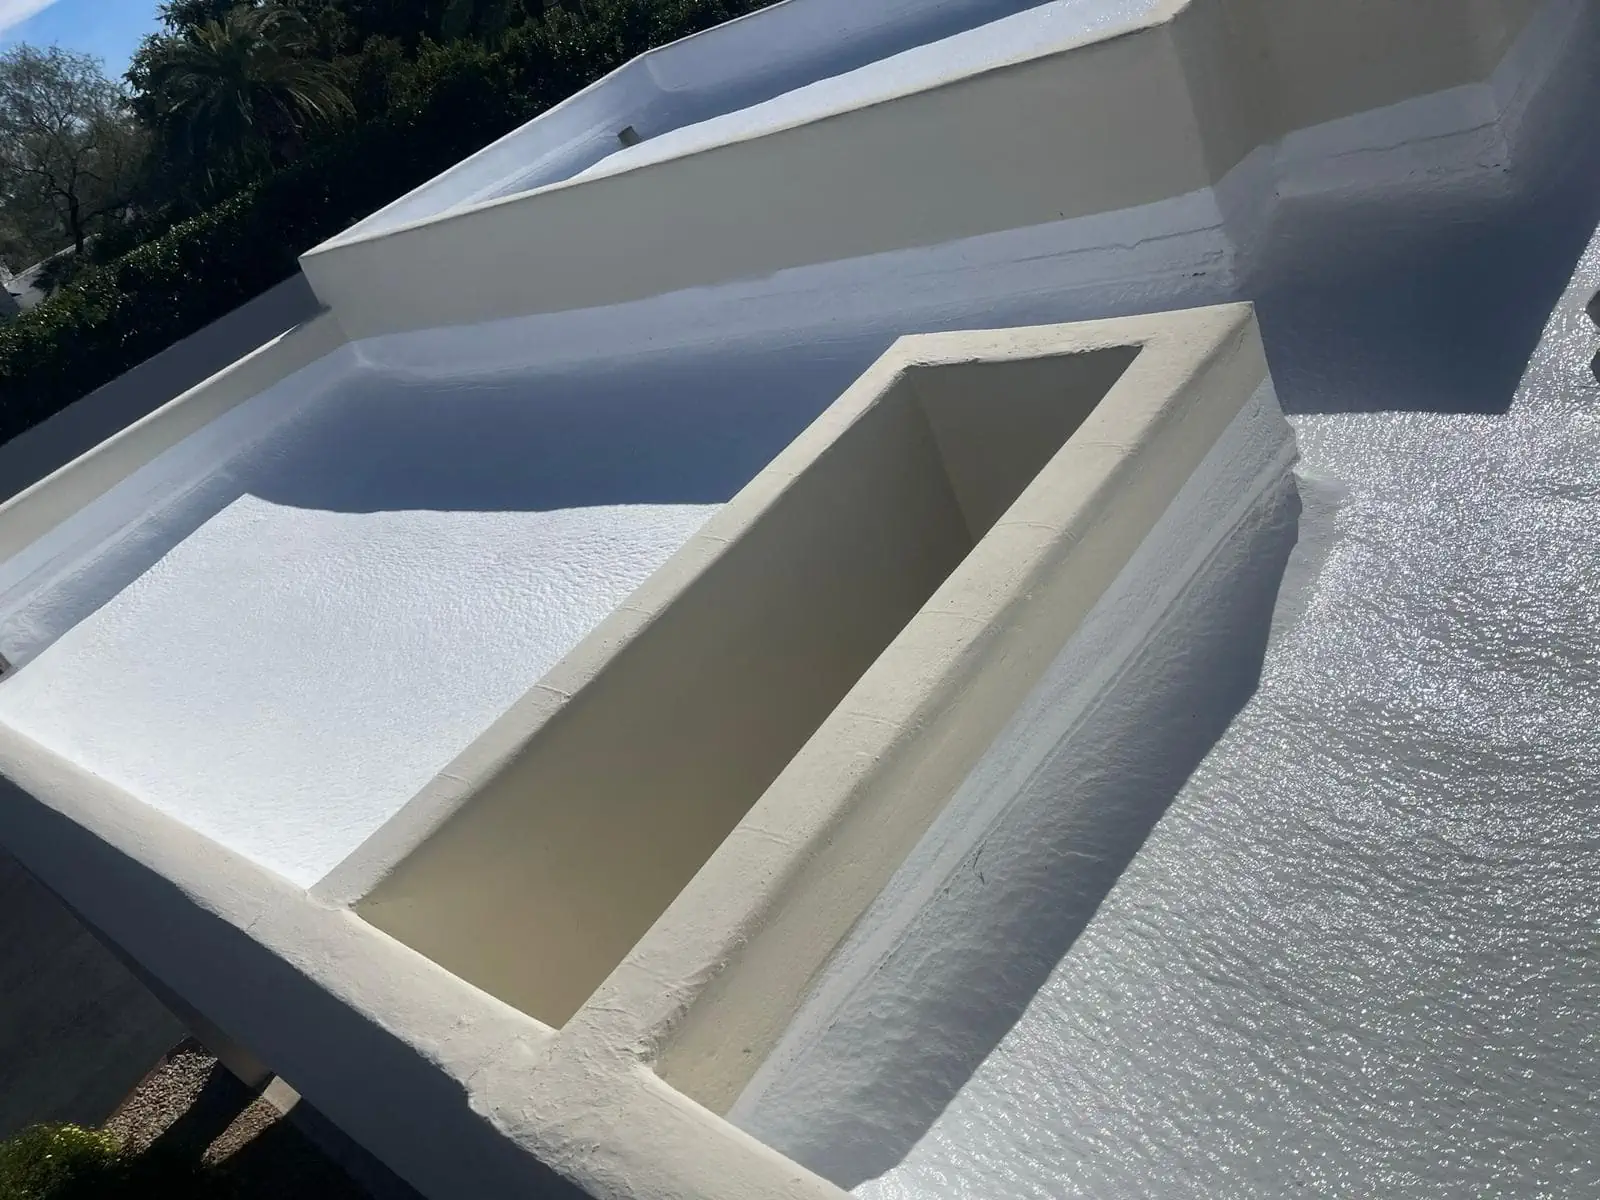 Polyurethane roof spray in flagstaff